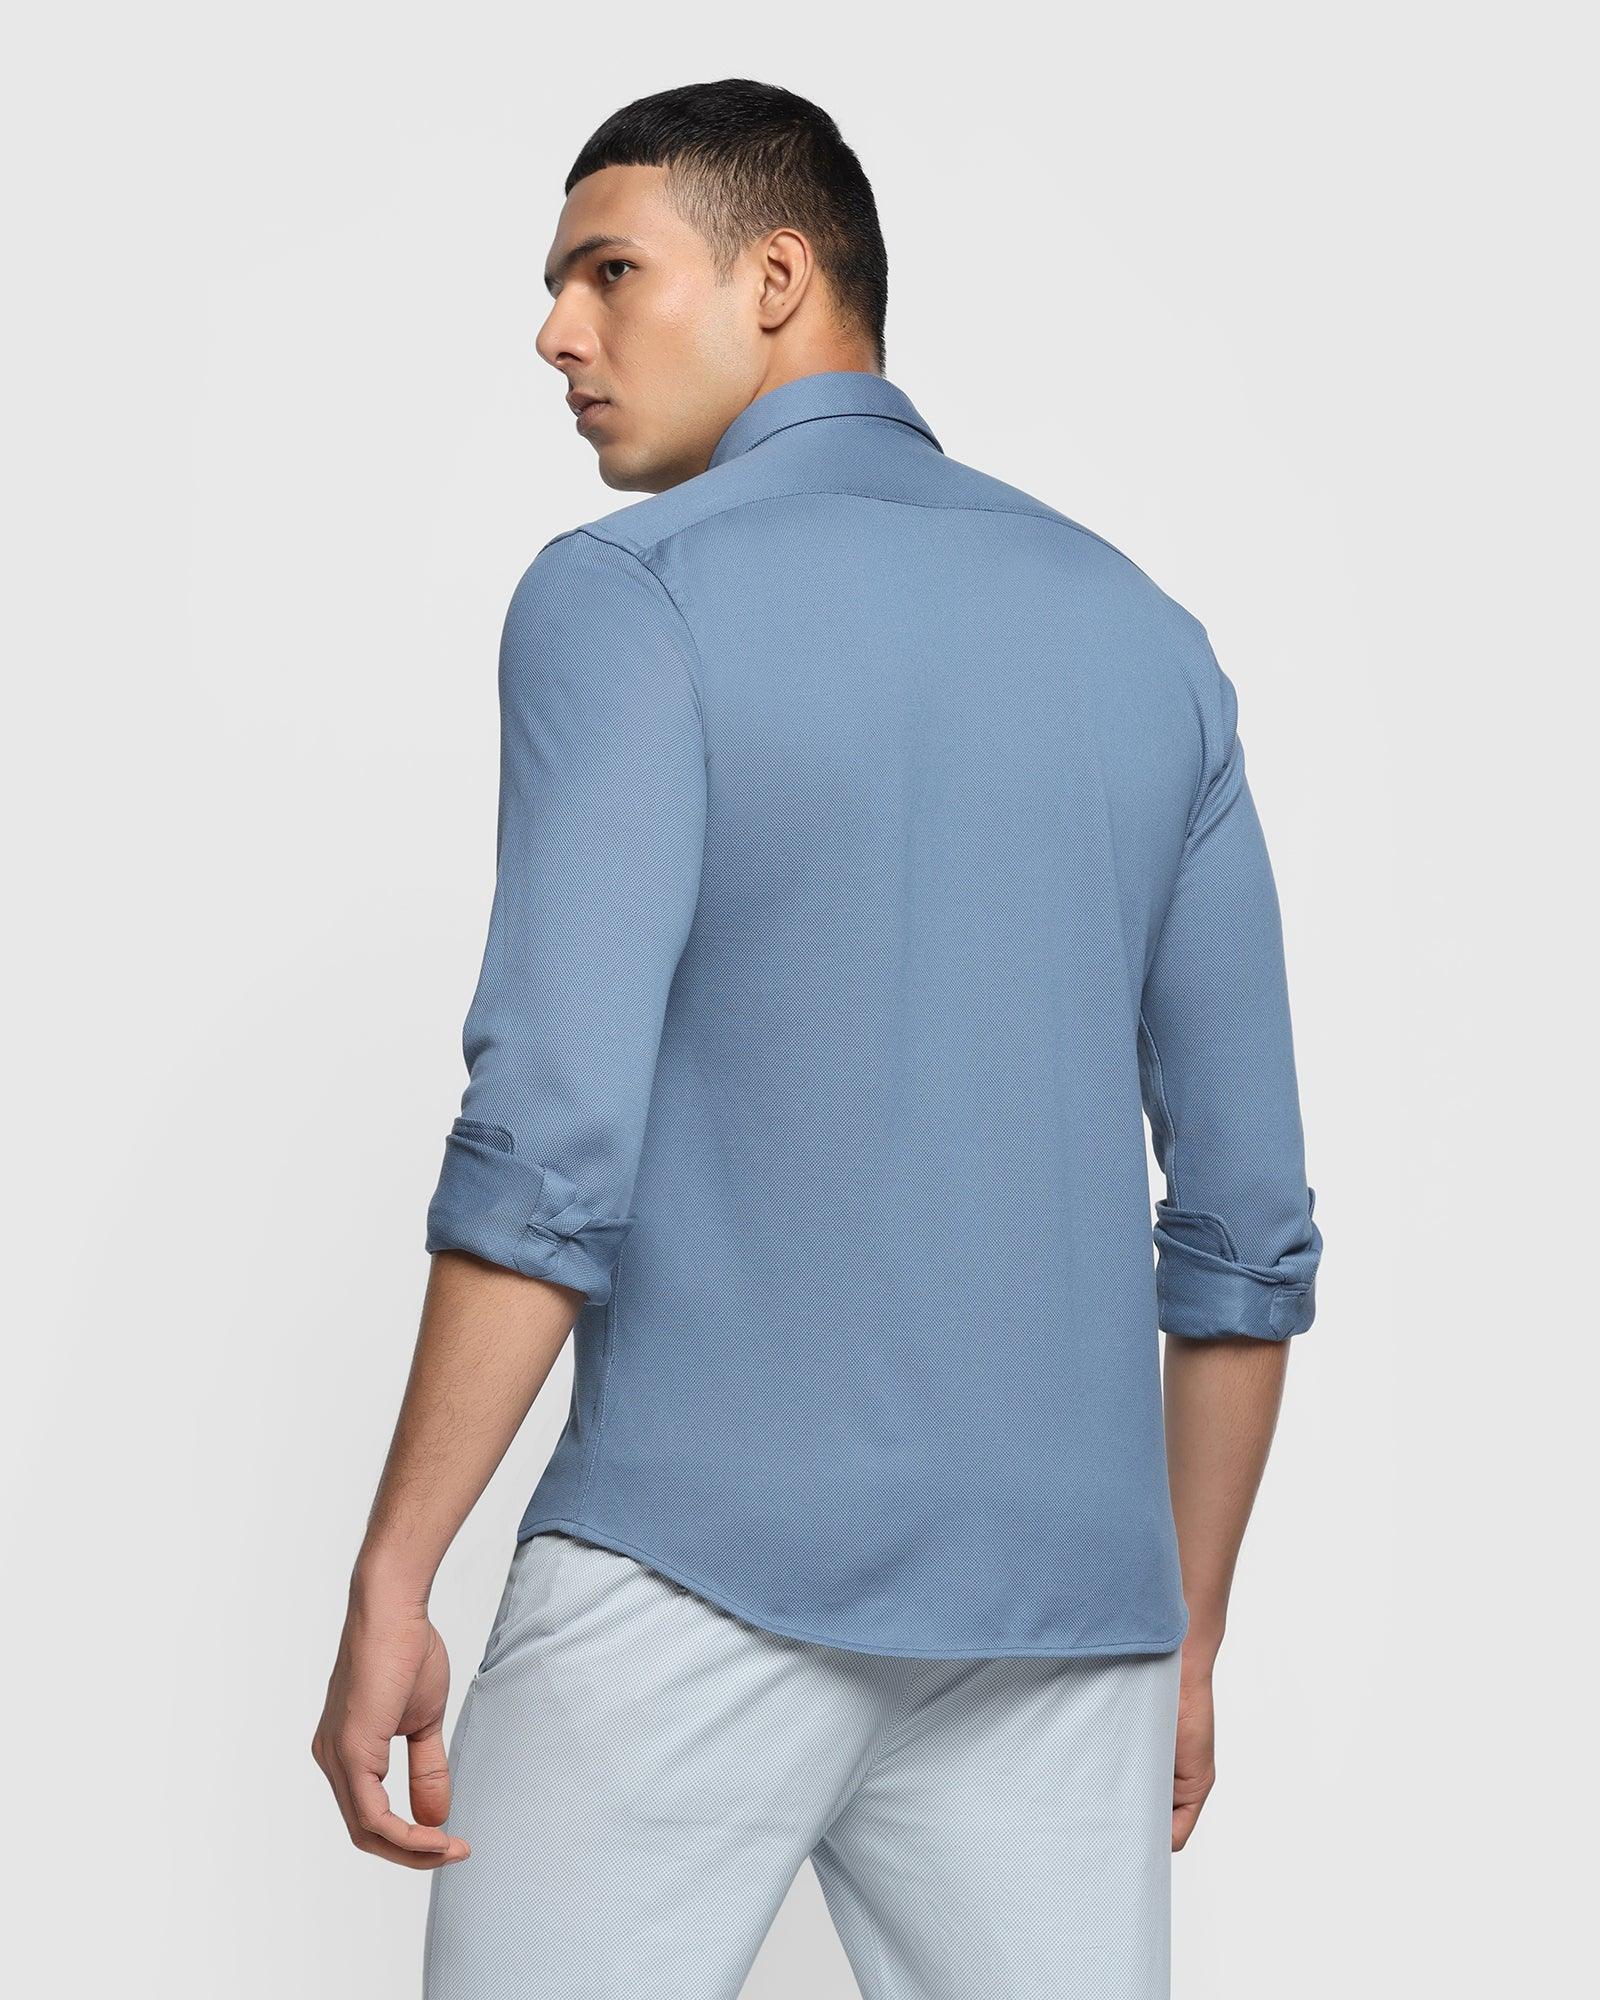 Casual Blue Solid Shirt - Pareto